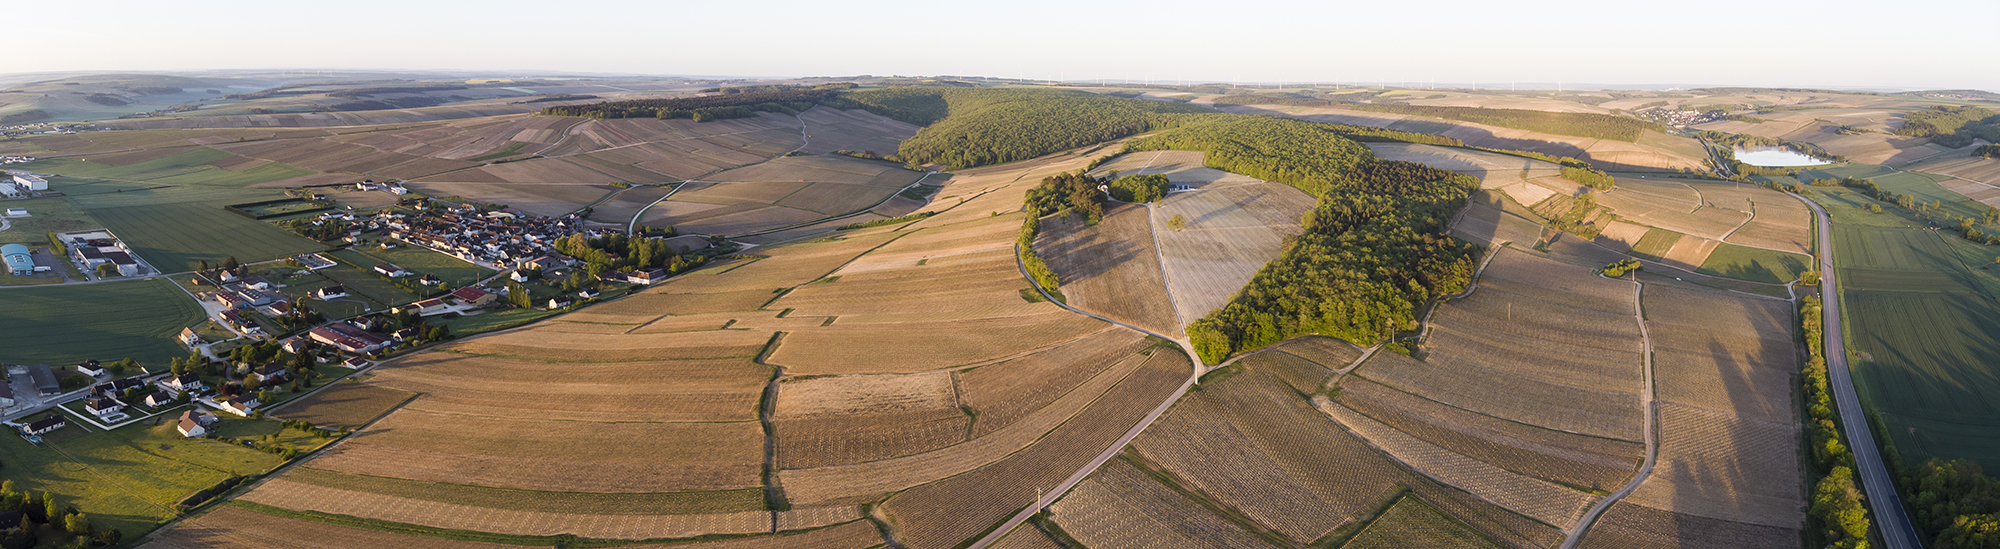 Plan d'ensemble des sols du vignoble de Chablis - © BIVB / Sébastien Boulard